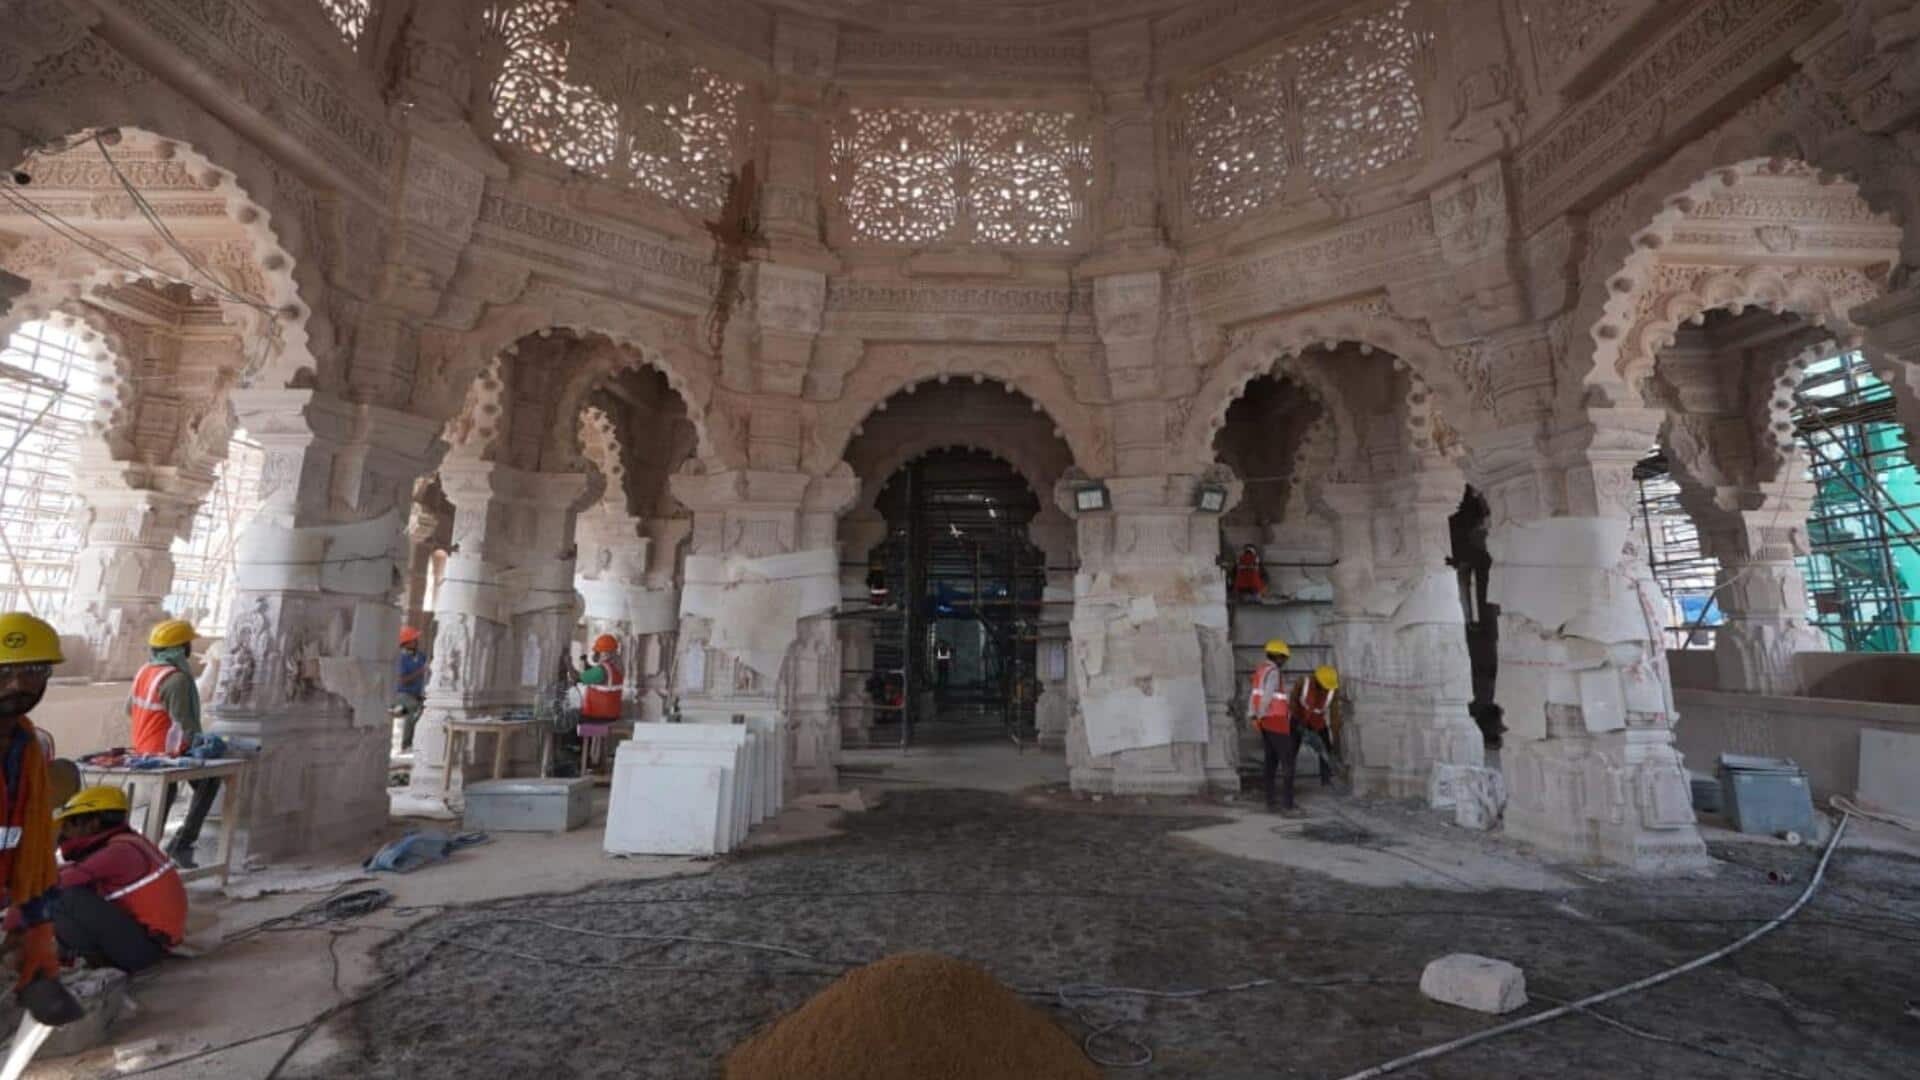 అయోధ్య రామ మందిరం లోపల చిత్రాలను షేర్ చేసిన రామ జన్మభూమి ట్రస్ట్